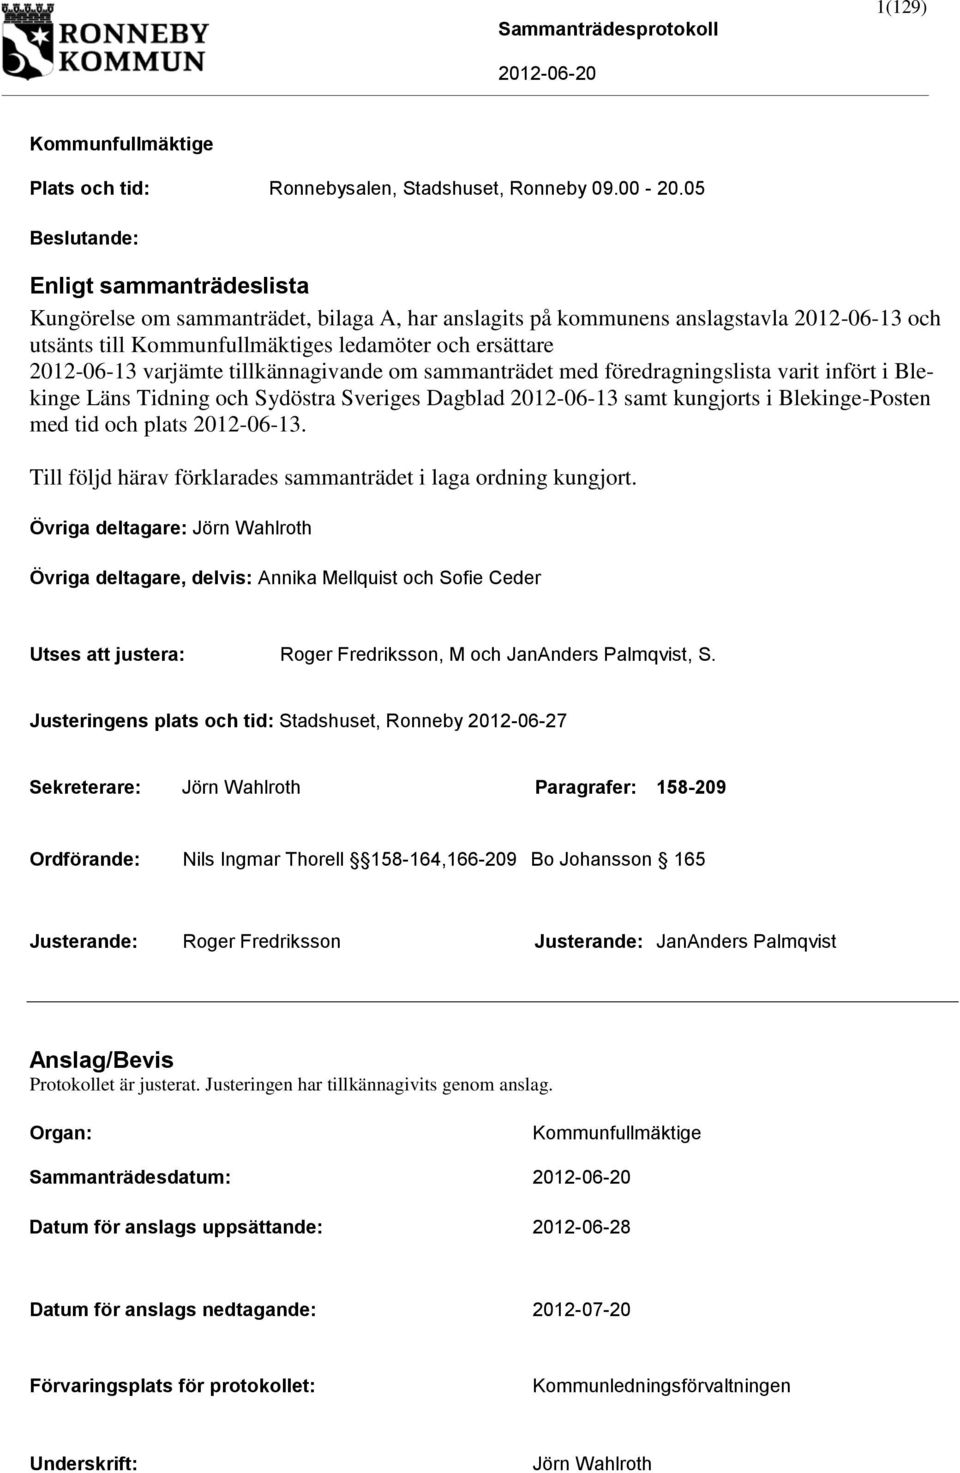 varjämte tillkännagivande om sammanträdet med föredragningslista varit infört i Blekinge Läns Tidning och Sydöstra Sveriges Dagblad 2012-06-13 samt kungjorts i Blekinge-Posten med tid och plats